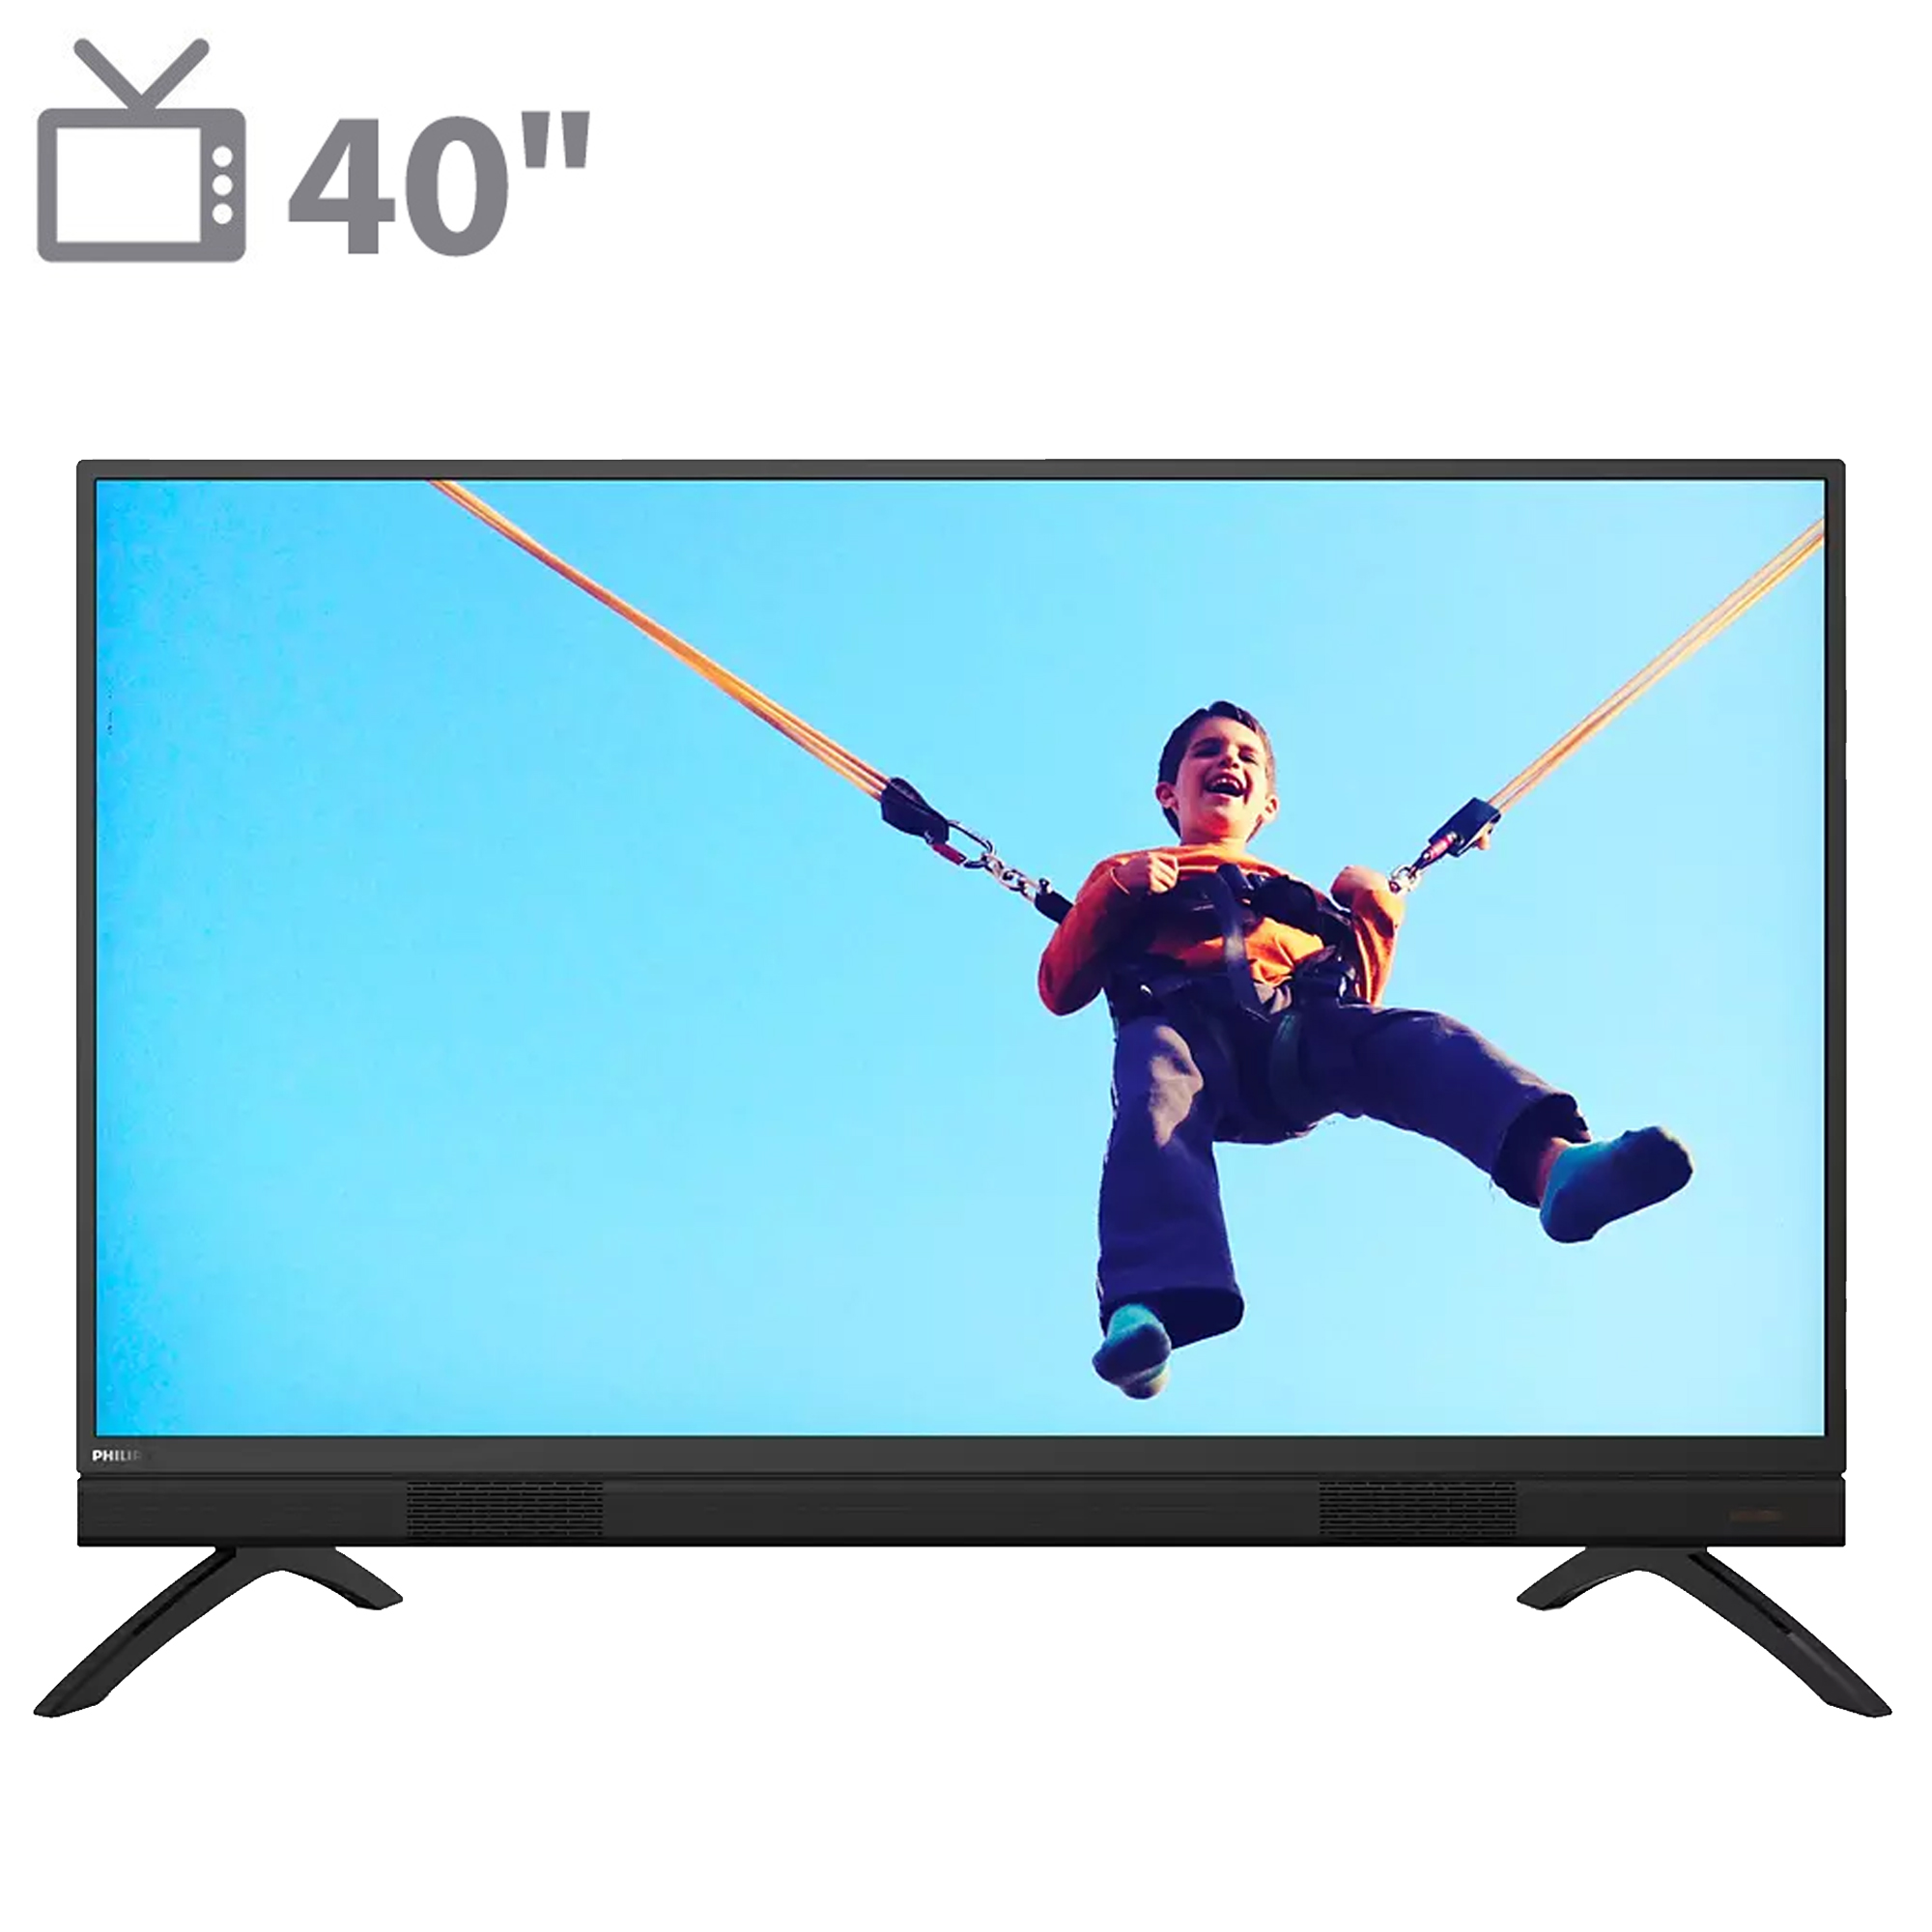 تلویزیون ال ای دی هوشمند فیلیپس مدل 40PFT5883 سایز 40 اینچ - بازرگانیشهبازیان